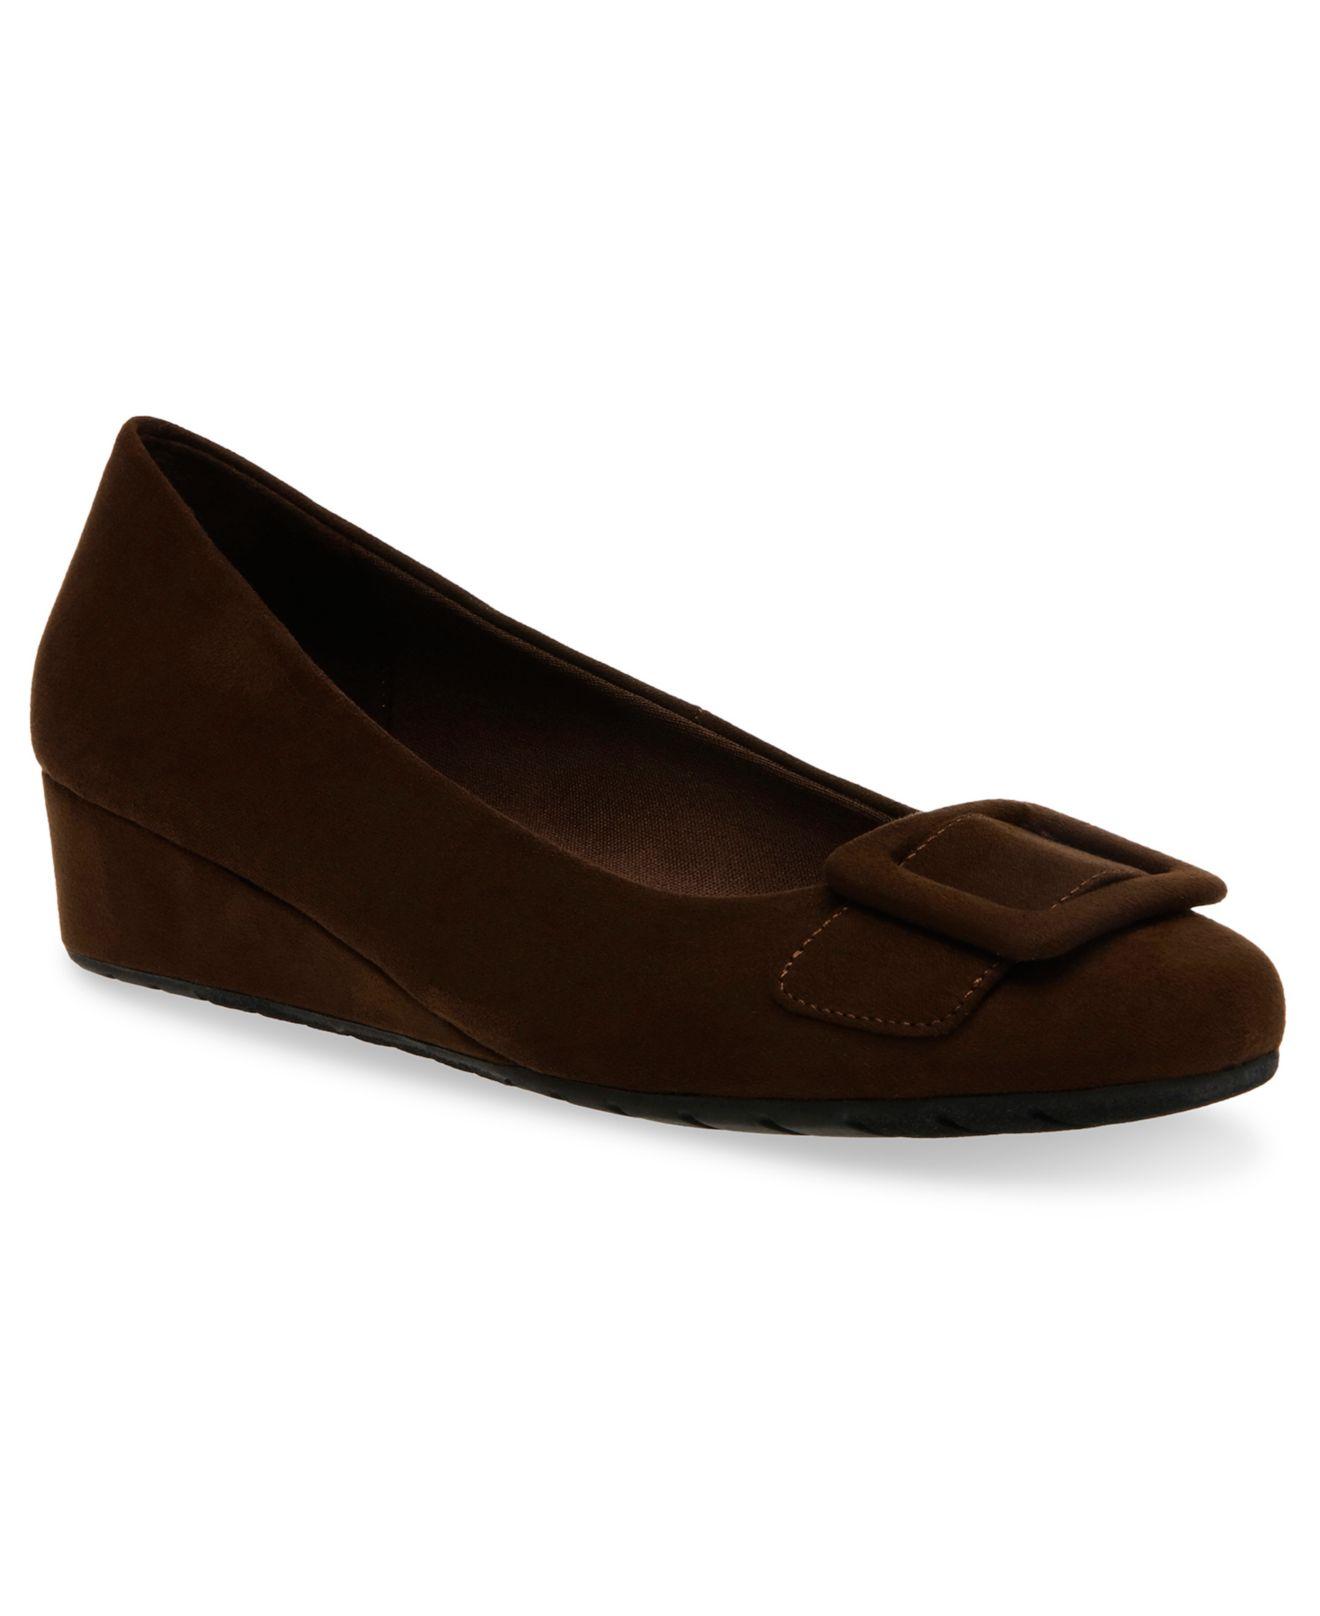 Anne Klein Marissa Wedge Sandals in Brown | Lyst